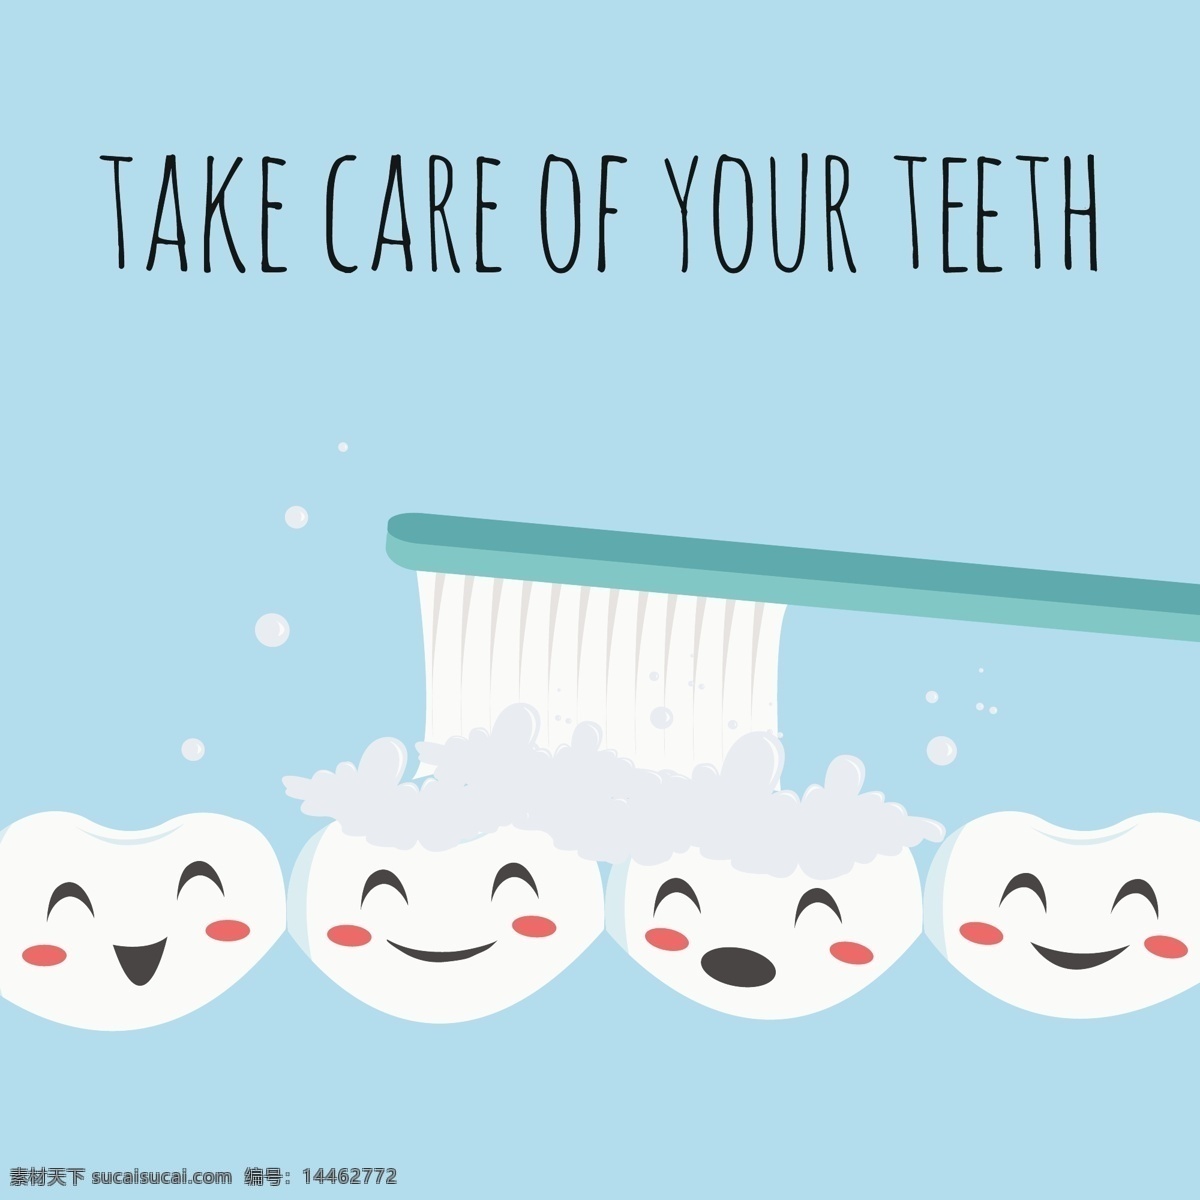 刷牙广告背景 牙齿 卡通 牙齿笑脸 牙刷 刷牙 牙齿保健 牙齿清洁 矢量背景